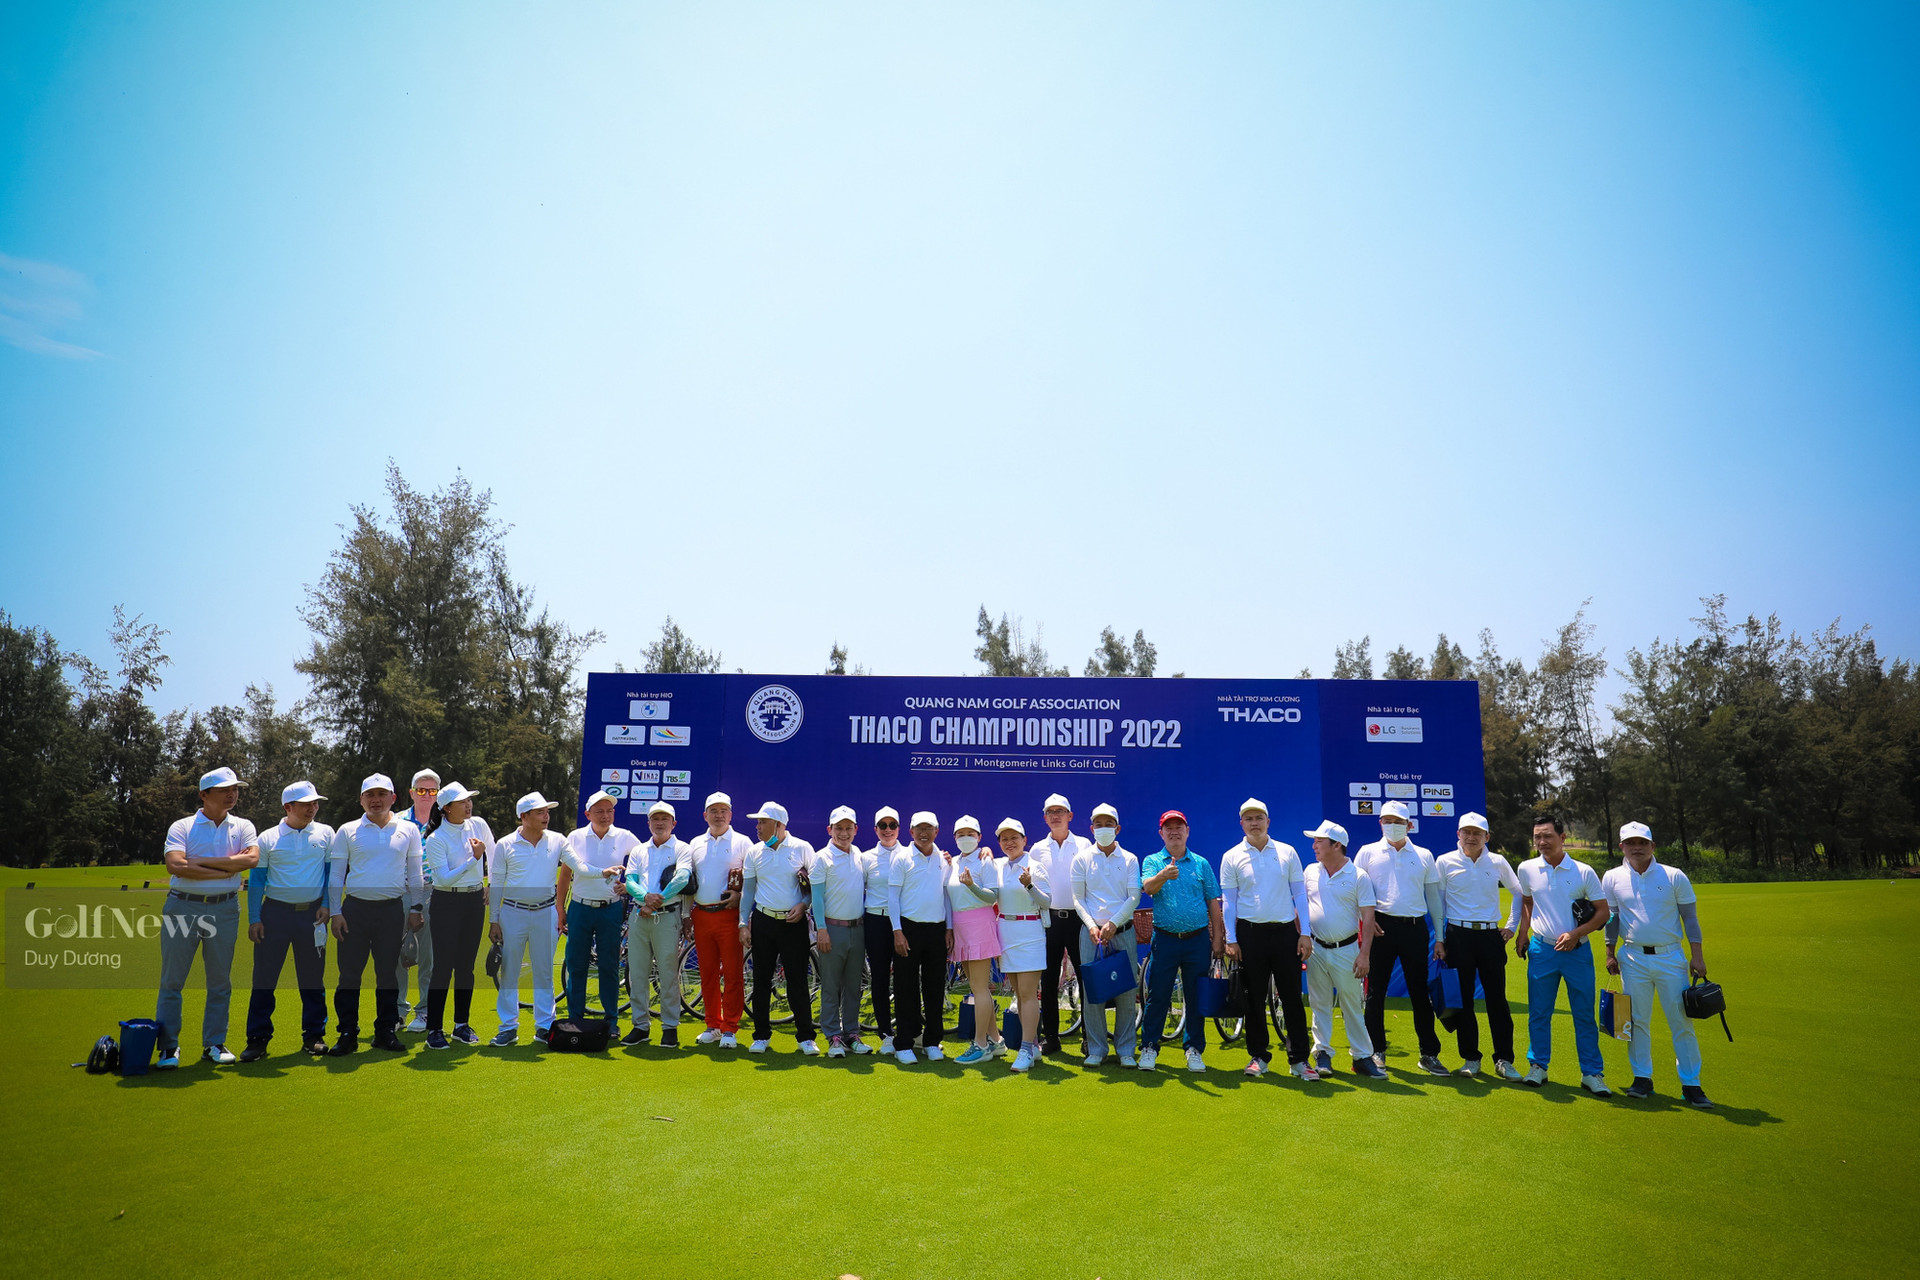 Thaco Championship – Khai màn chuỗi sự kiện của hội golf Quảng Nam trong năm 2022 - Ảnh 1.